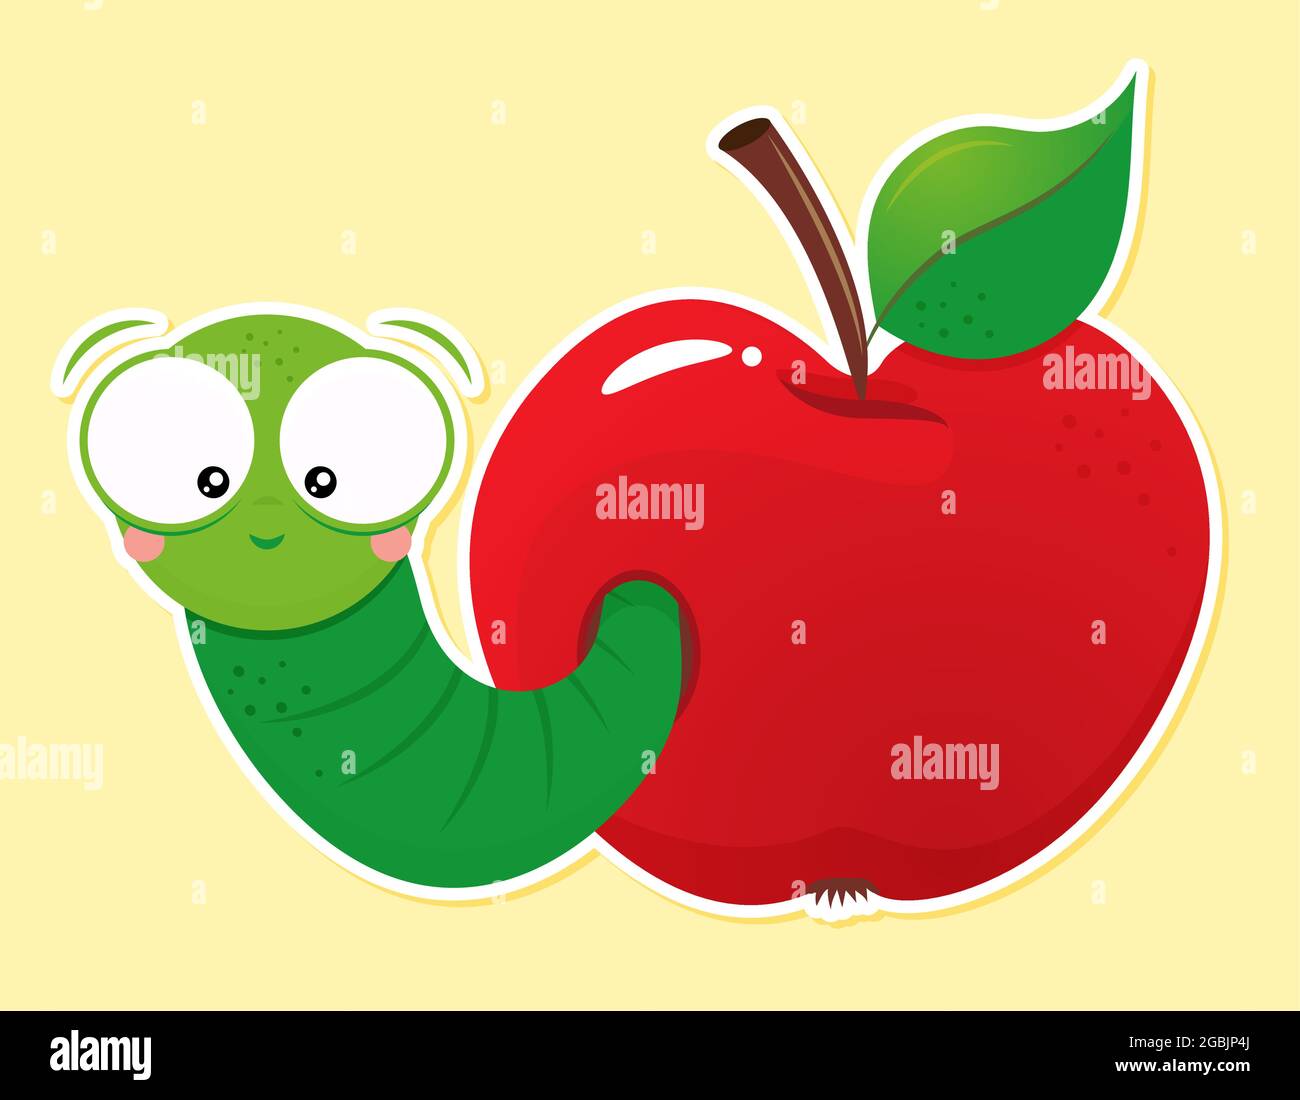 Niedlicher grüner Wurm in rotem Apfel. Zurück zur Schule Charakter smart catterpillar Tier Illustration. Gut für Kleidung, Geschenksets, Fotos oder motivationsartikel Stock Vektor